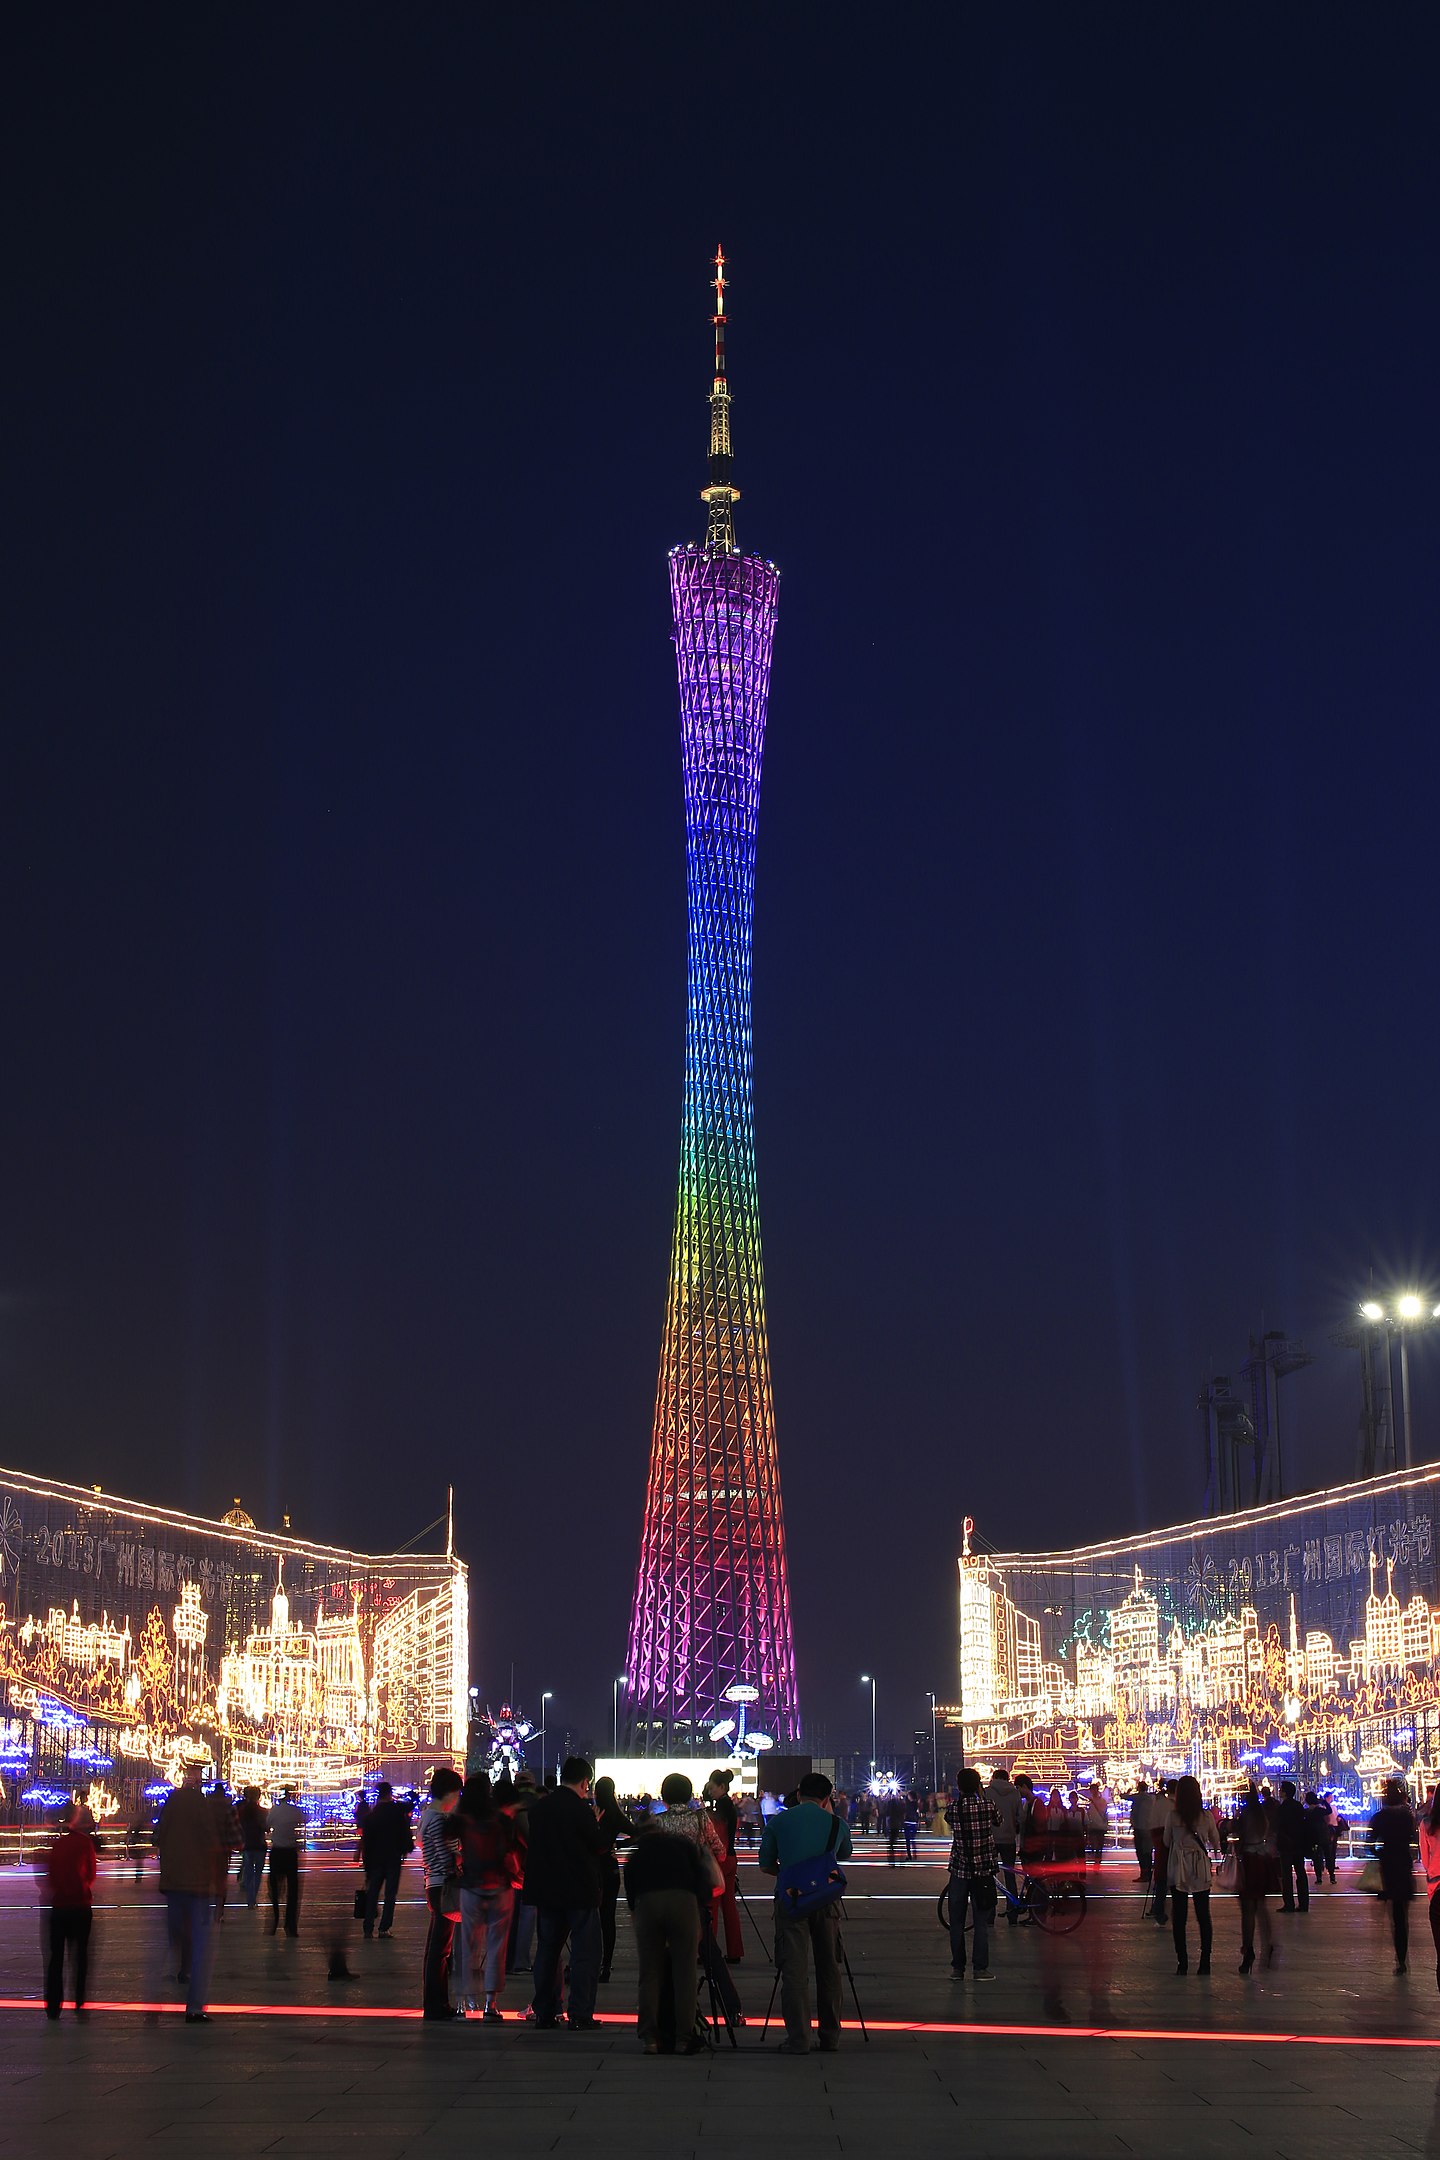 Canton Tower - 600 metros - China - Inaugurada em 2012, na cidade de Guangzhou, predominou como a maior torre do país até a construção da Torre de Shanghai. E no mundo só perde em altura para a Tokyo Skytree. Sua iluminação tem 7 mil luzes de led, que proporcionam um grande espetáculo.